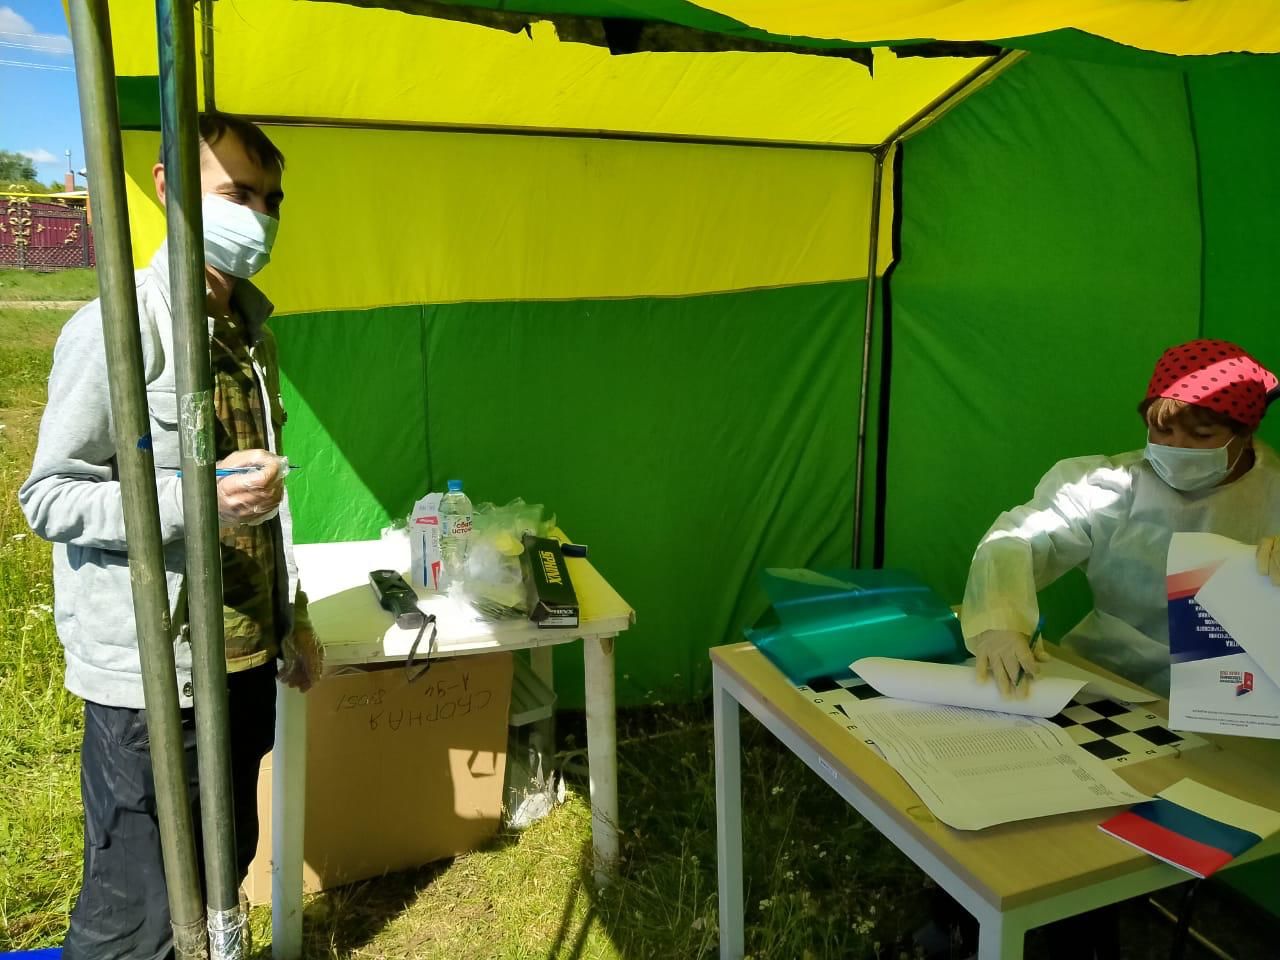 Жители деревни Урняк голосуют по поправкам к Конституции РФ в шатре